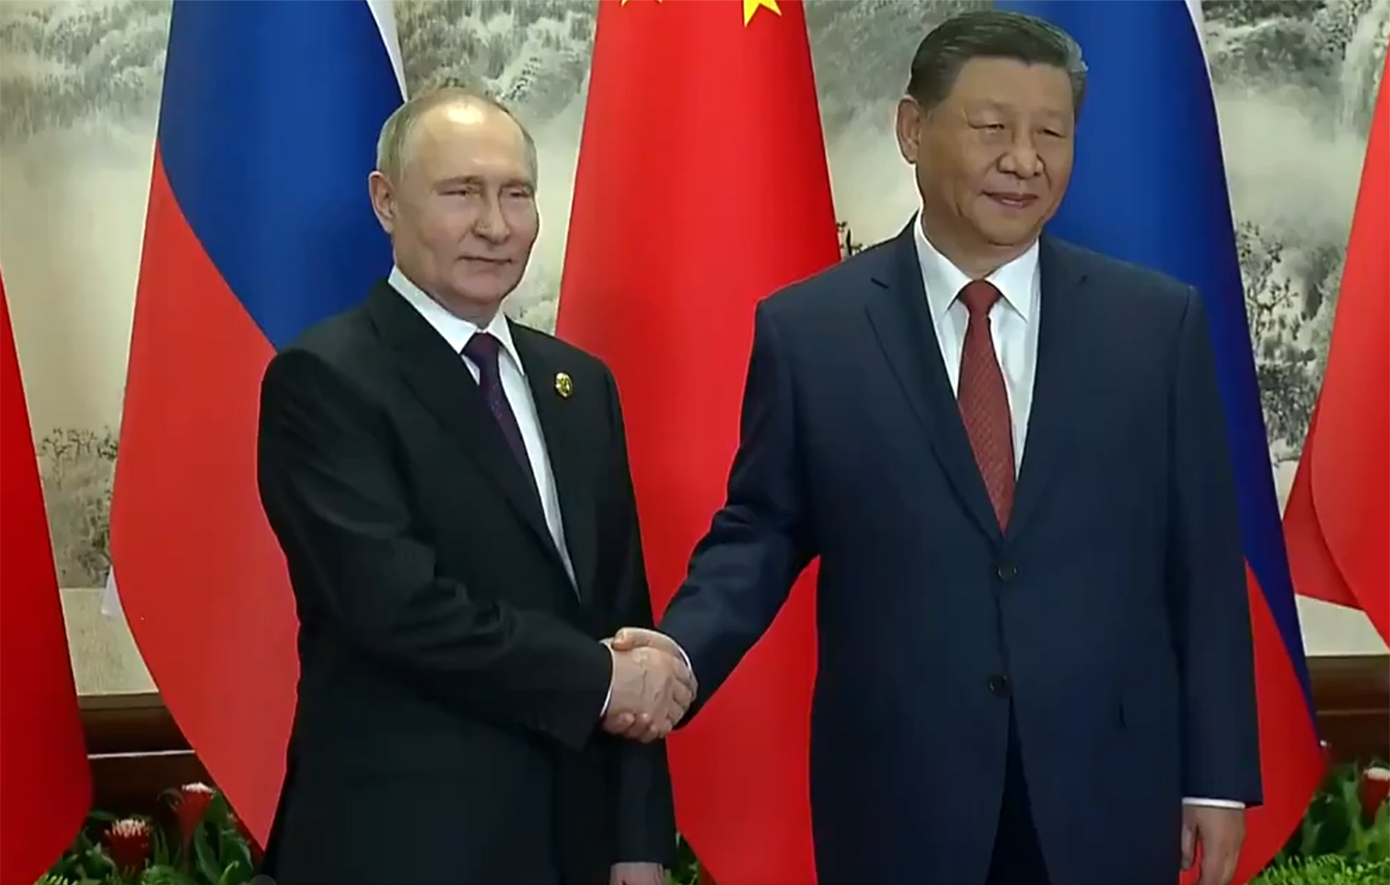 Ο Σι Τζινπίνγκ και ο Βλαντίμιρ Πούτιν σφίγγουν τα χέρια στο Πεκίνο